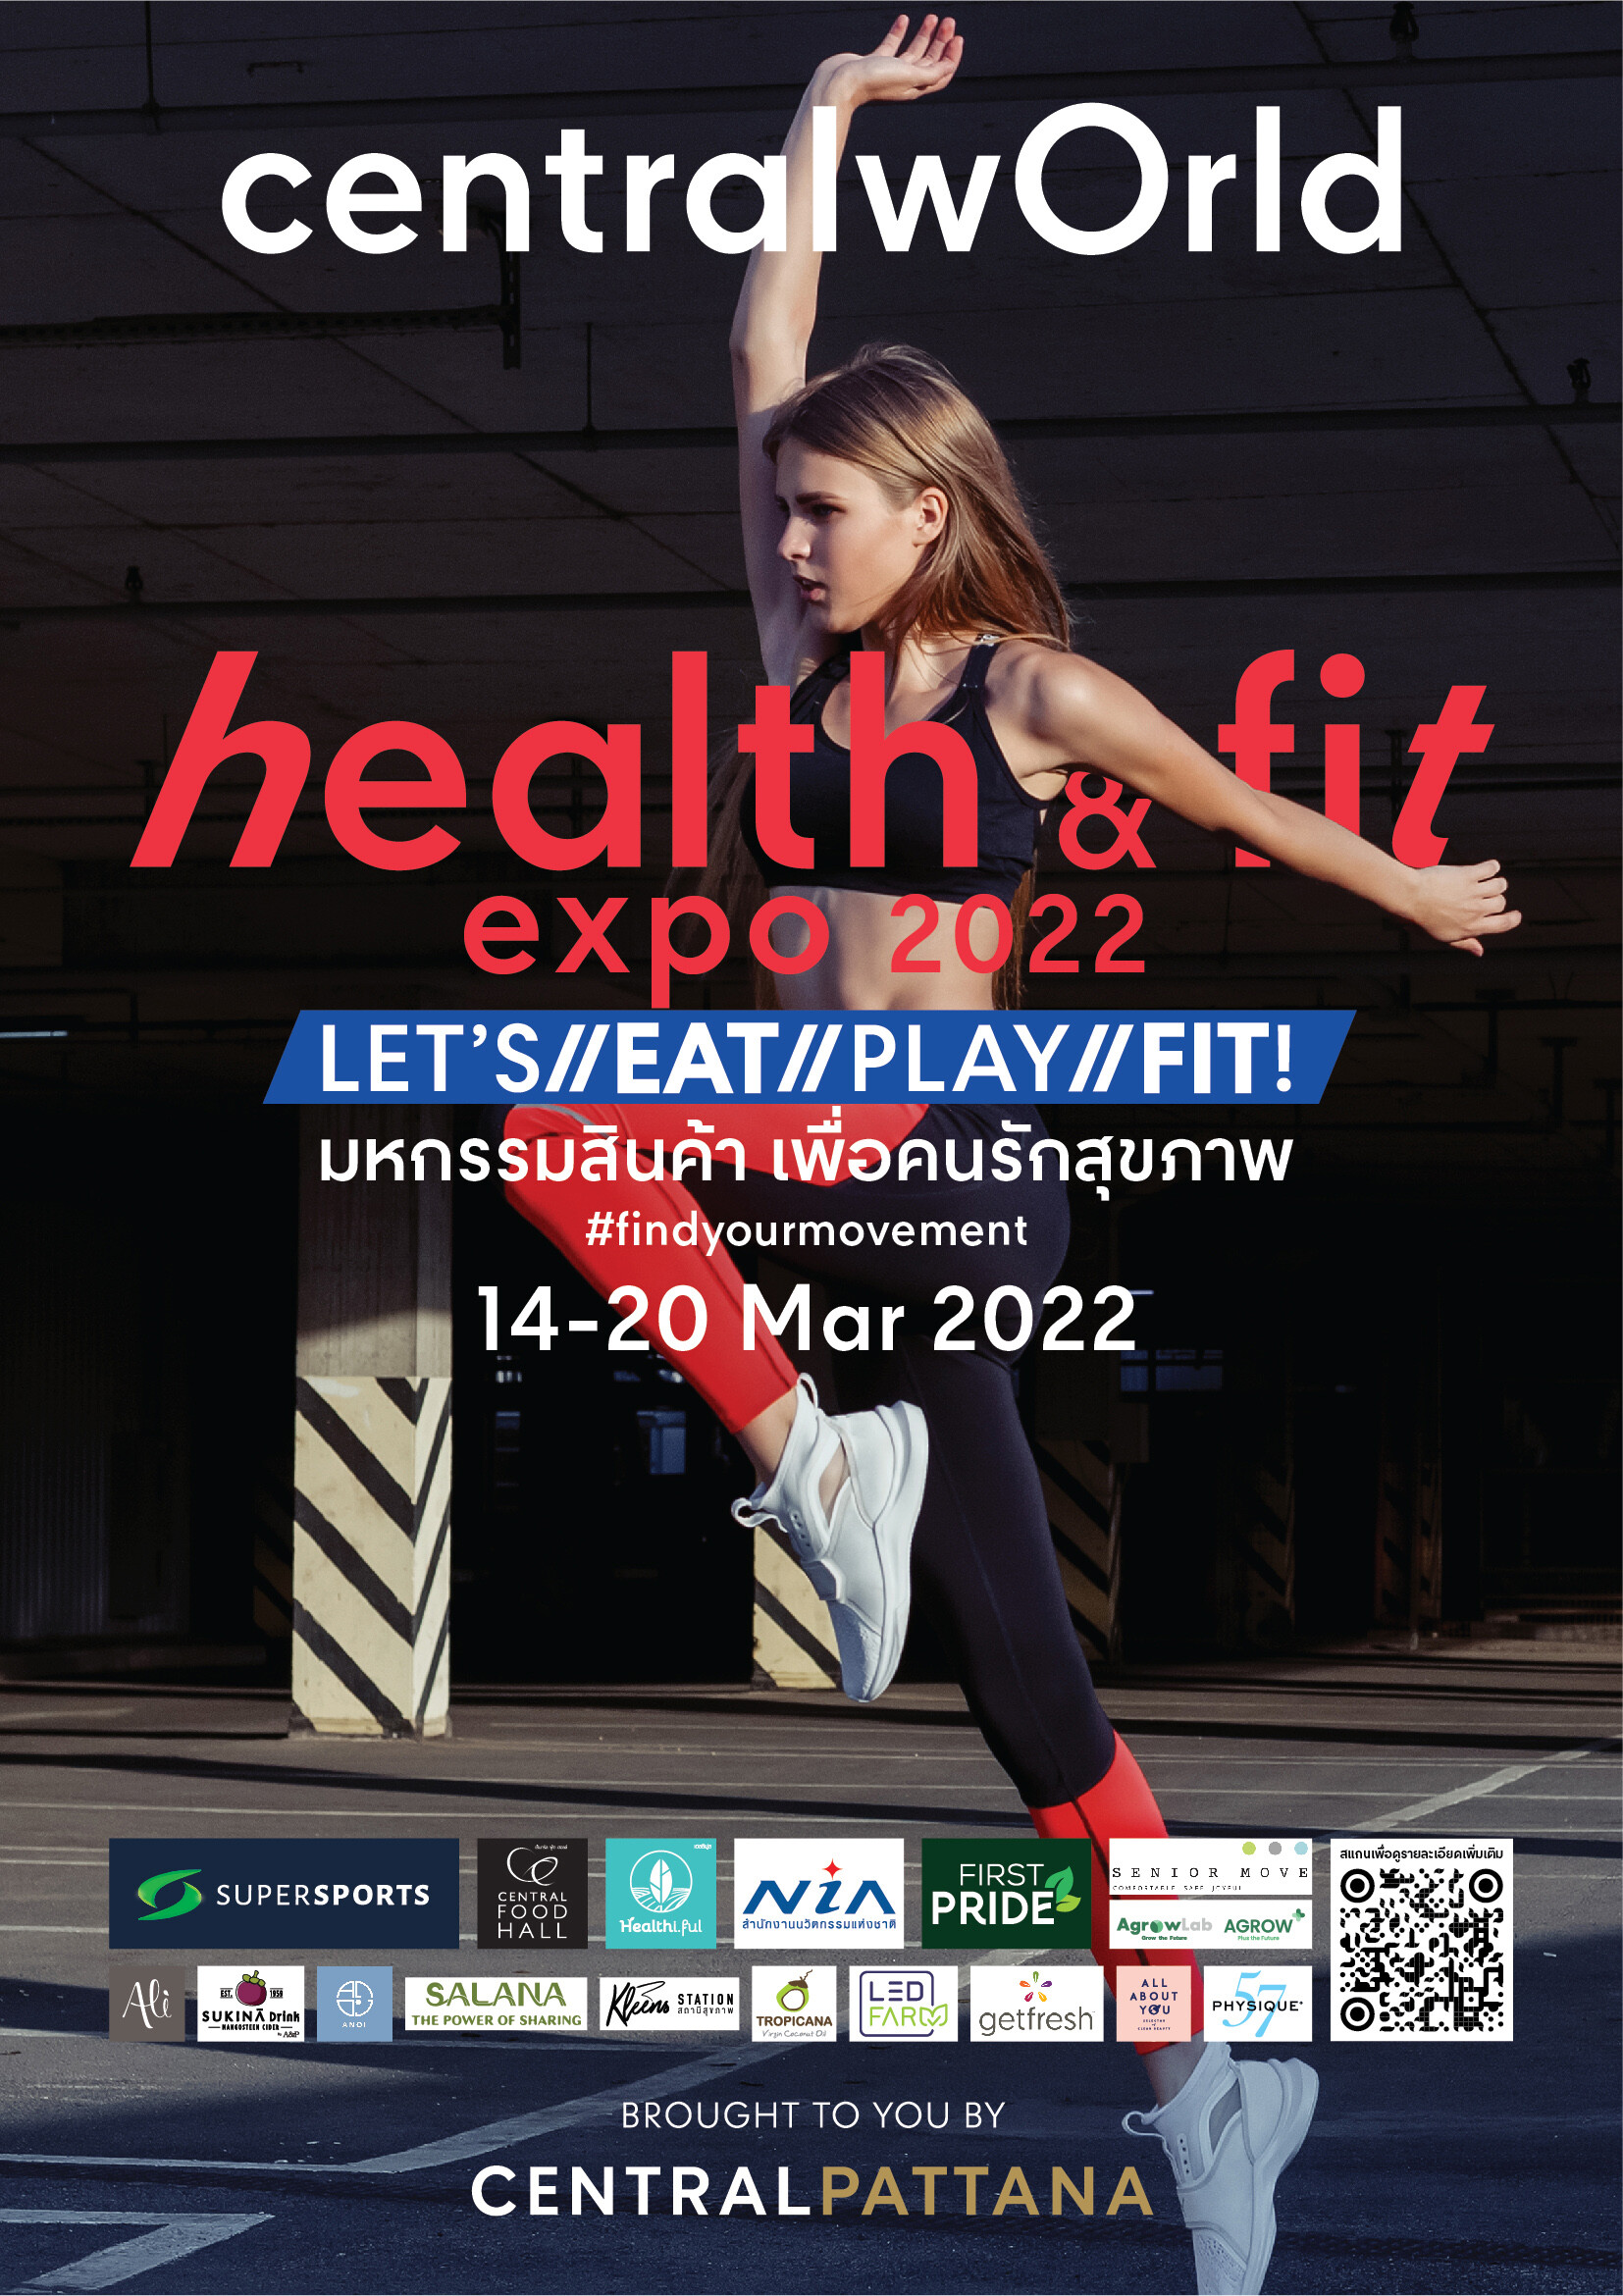 เซ็นทรัลเวิลด์ ตอกย้ำ Sport destination ตัวจริง ชวนสายสปอร์ต และคนรักสุขภาพ มาฟิตในงาน Health & Fit Expo 2022 มหกรรมเพื่อคนรักสุขภาพแบบครบวงจรสุดยิ่งใหญ่แห่งปีงานเดียวครบ Eat / Play / Fit จบทุกความต้องการ เริ่ม 14-20 มี.ค. 65 นี้